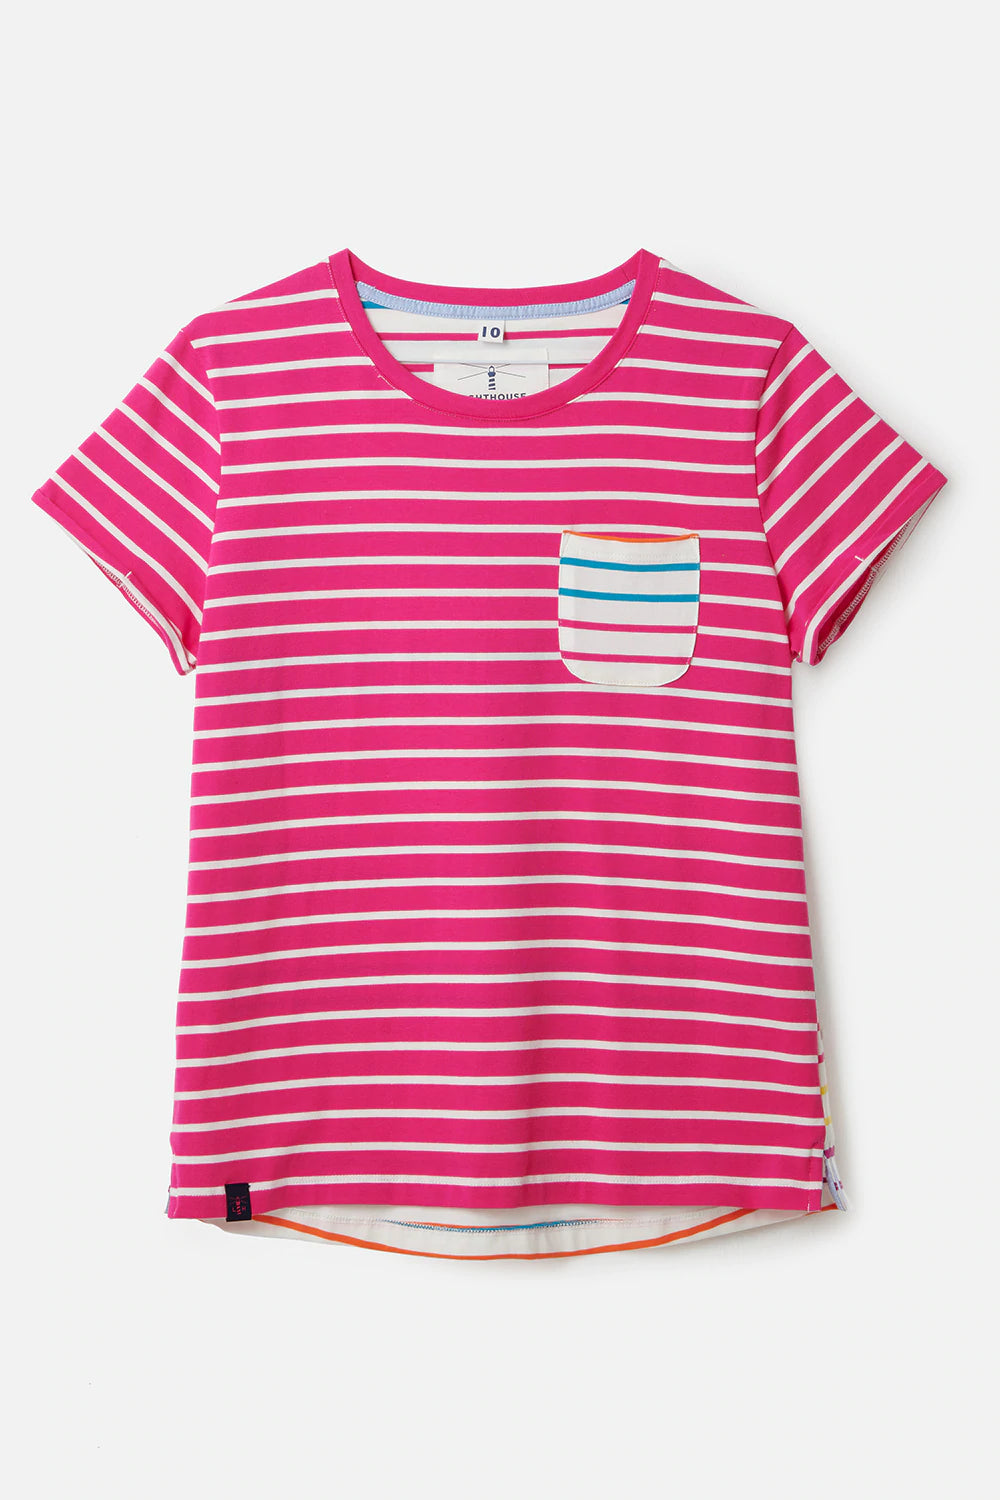 Lighthouse- Ladies Causeway T-Shirt - Pink Stripe